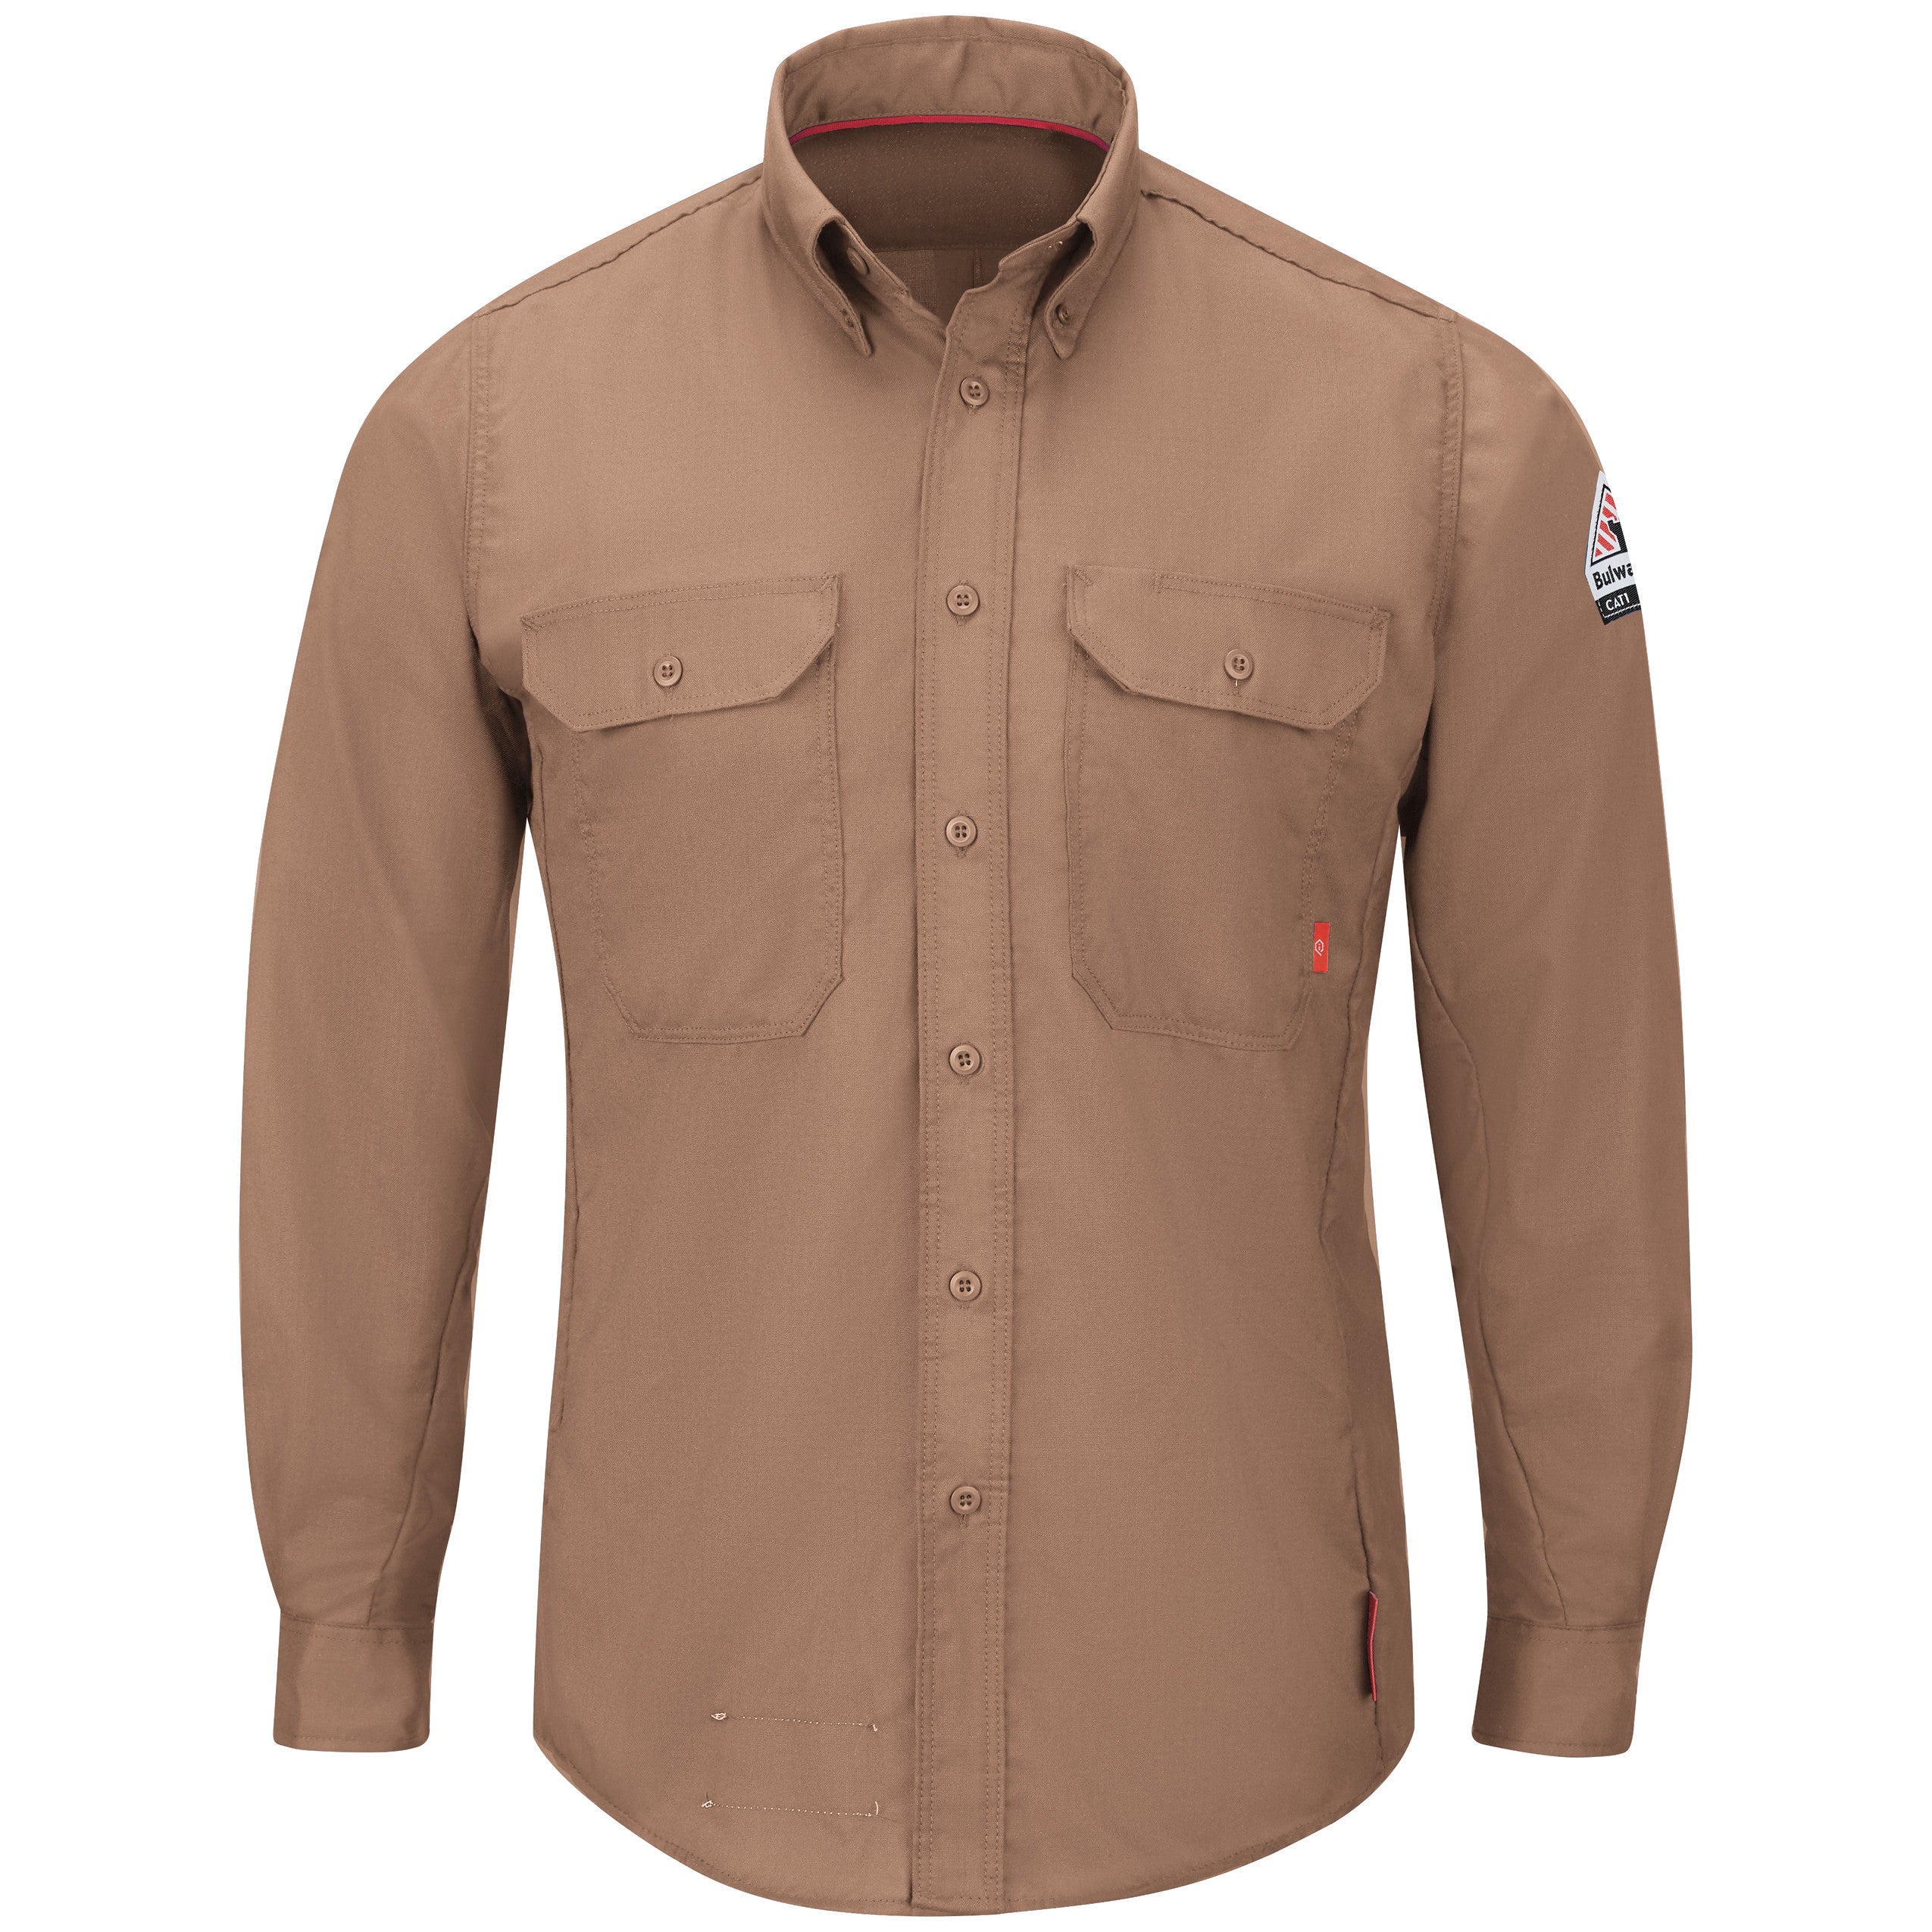 iQ Series® Men's Lightweight Comfort Woven Shirt QS24 - Brown-eSafety Supplies, Inc